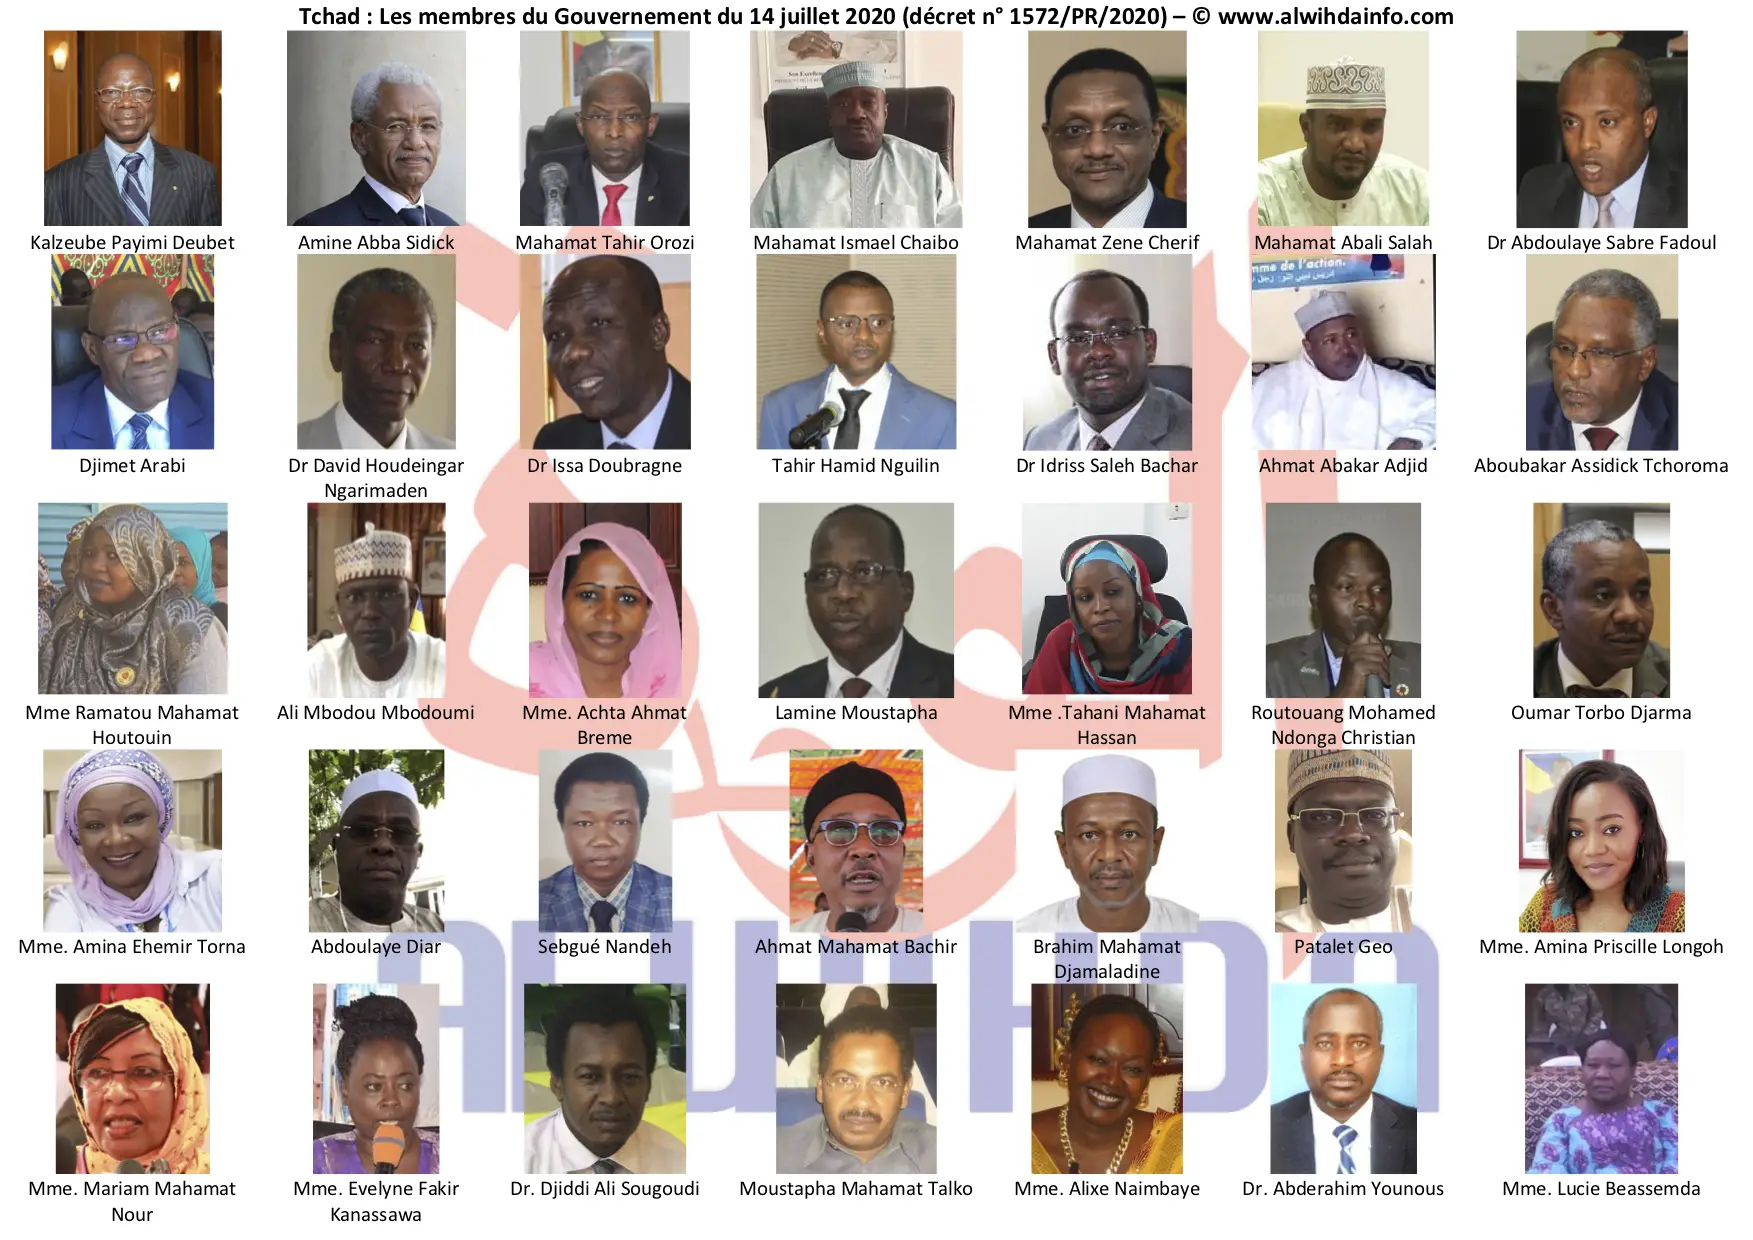 Tchad : les visages des 35 membres du nouveau Gouvernement